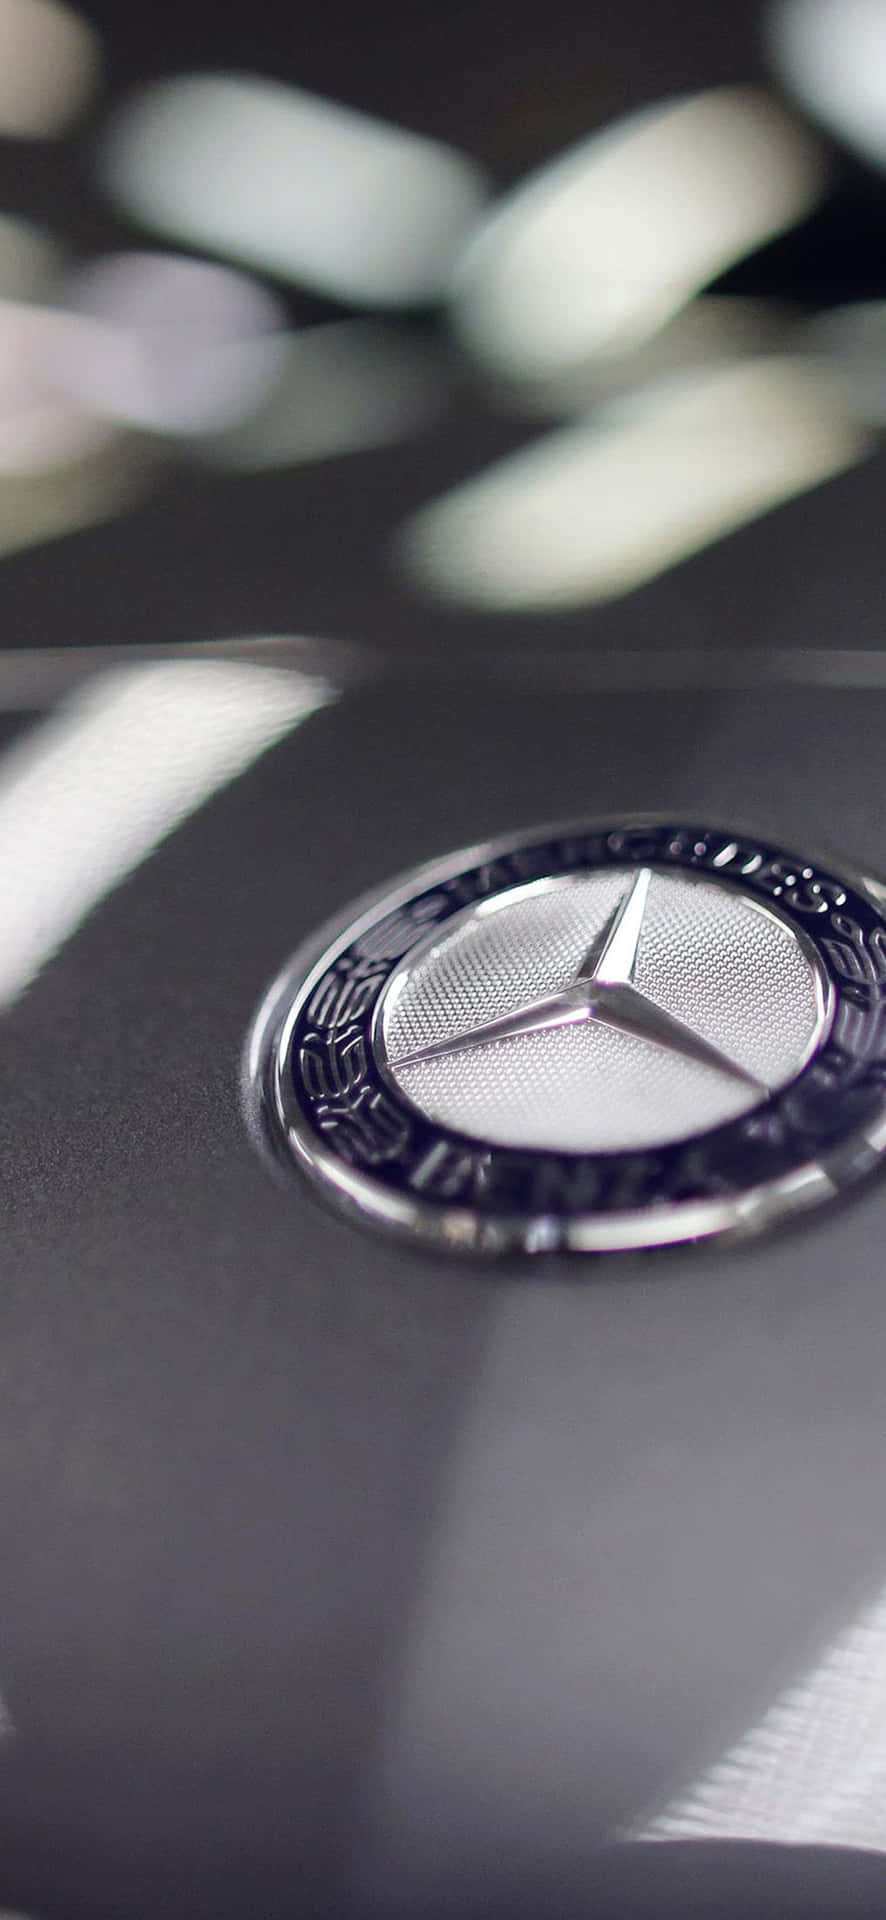 Eineluxuriöse Kombination - Der Mercedes Benz Und Das Iphone Wallpaper